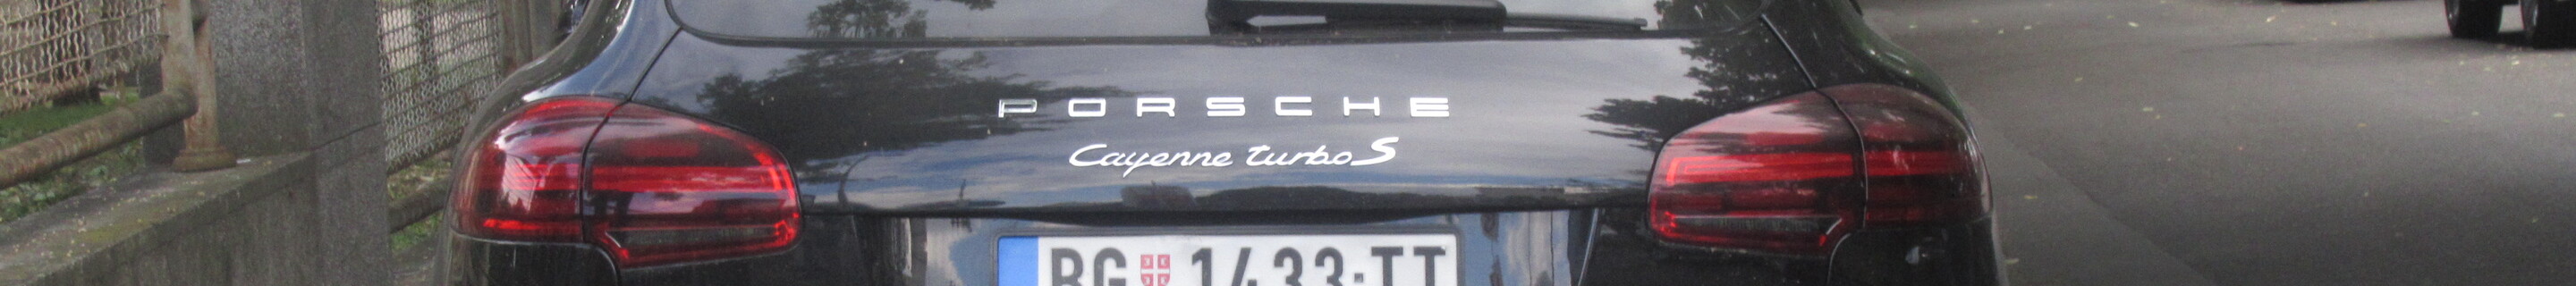 Porsche 958 Cayenne Turbo S MkII